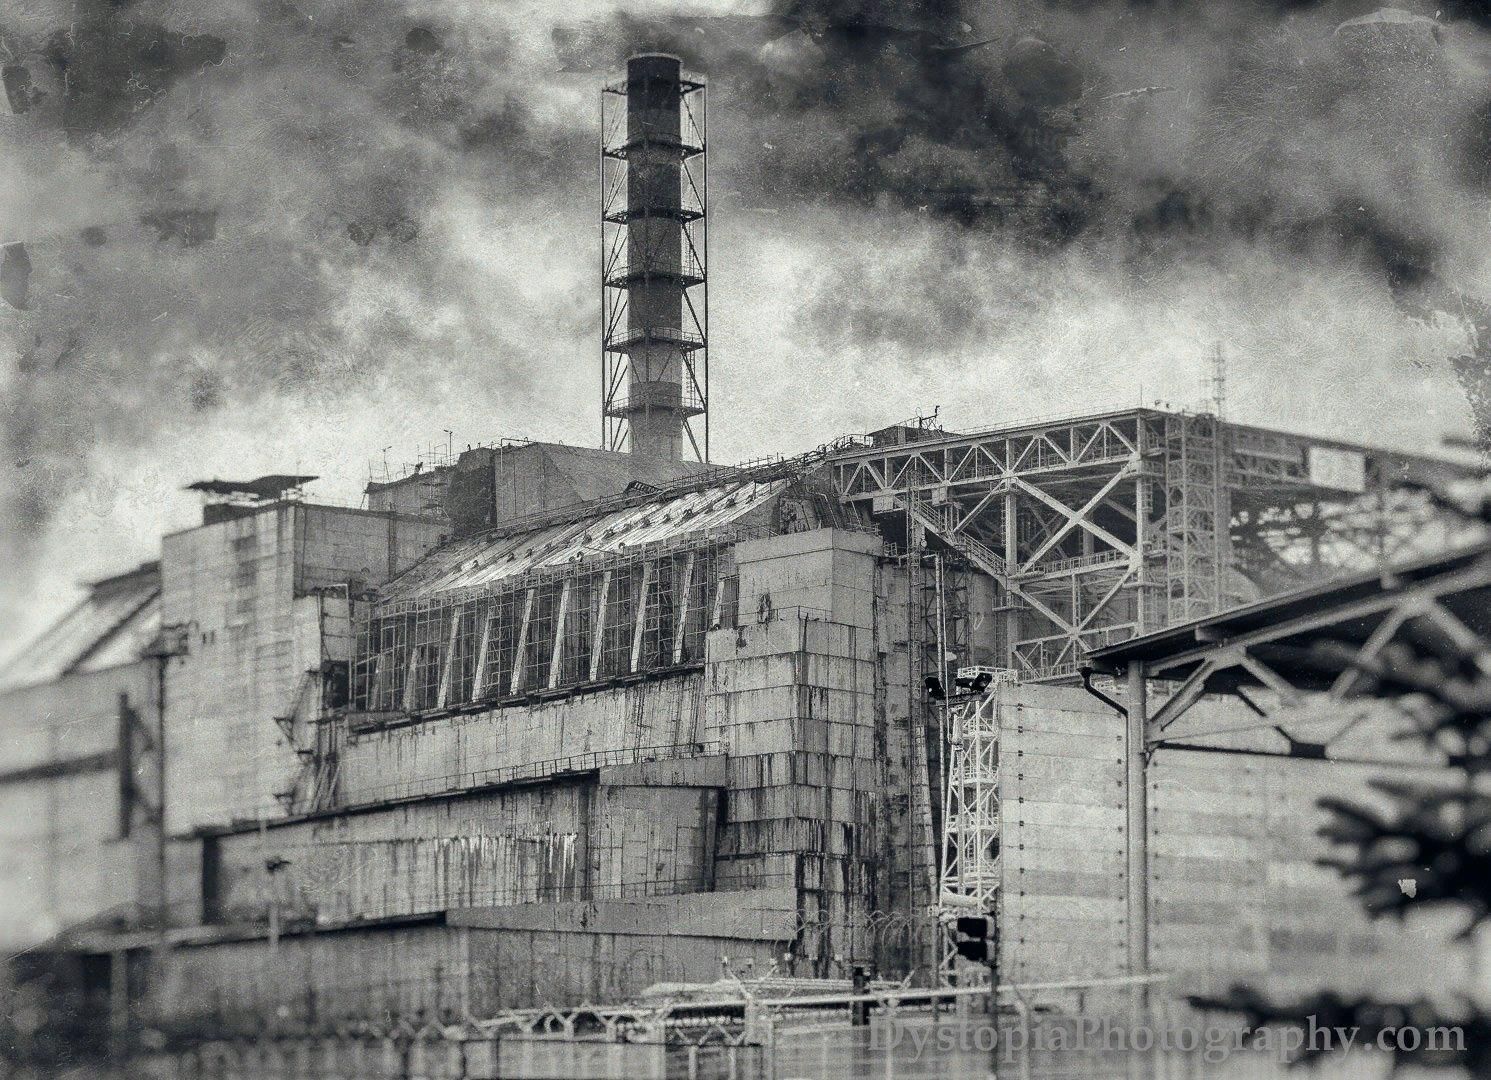 Черно аэс. Чернобыль ЧАЭС 4 энергоблок взрыв. ЧАЭС 26.04.1986. Атомная электро станция Чернобыль. 4 Энергоблок ЧАЭС 1986.